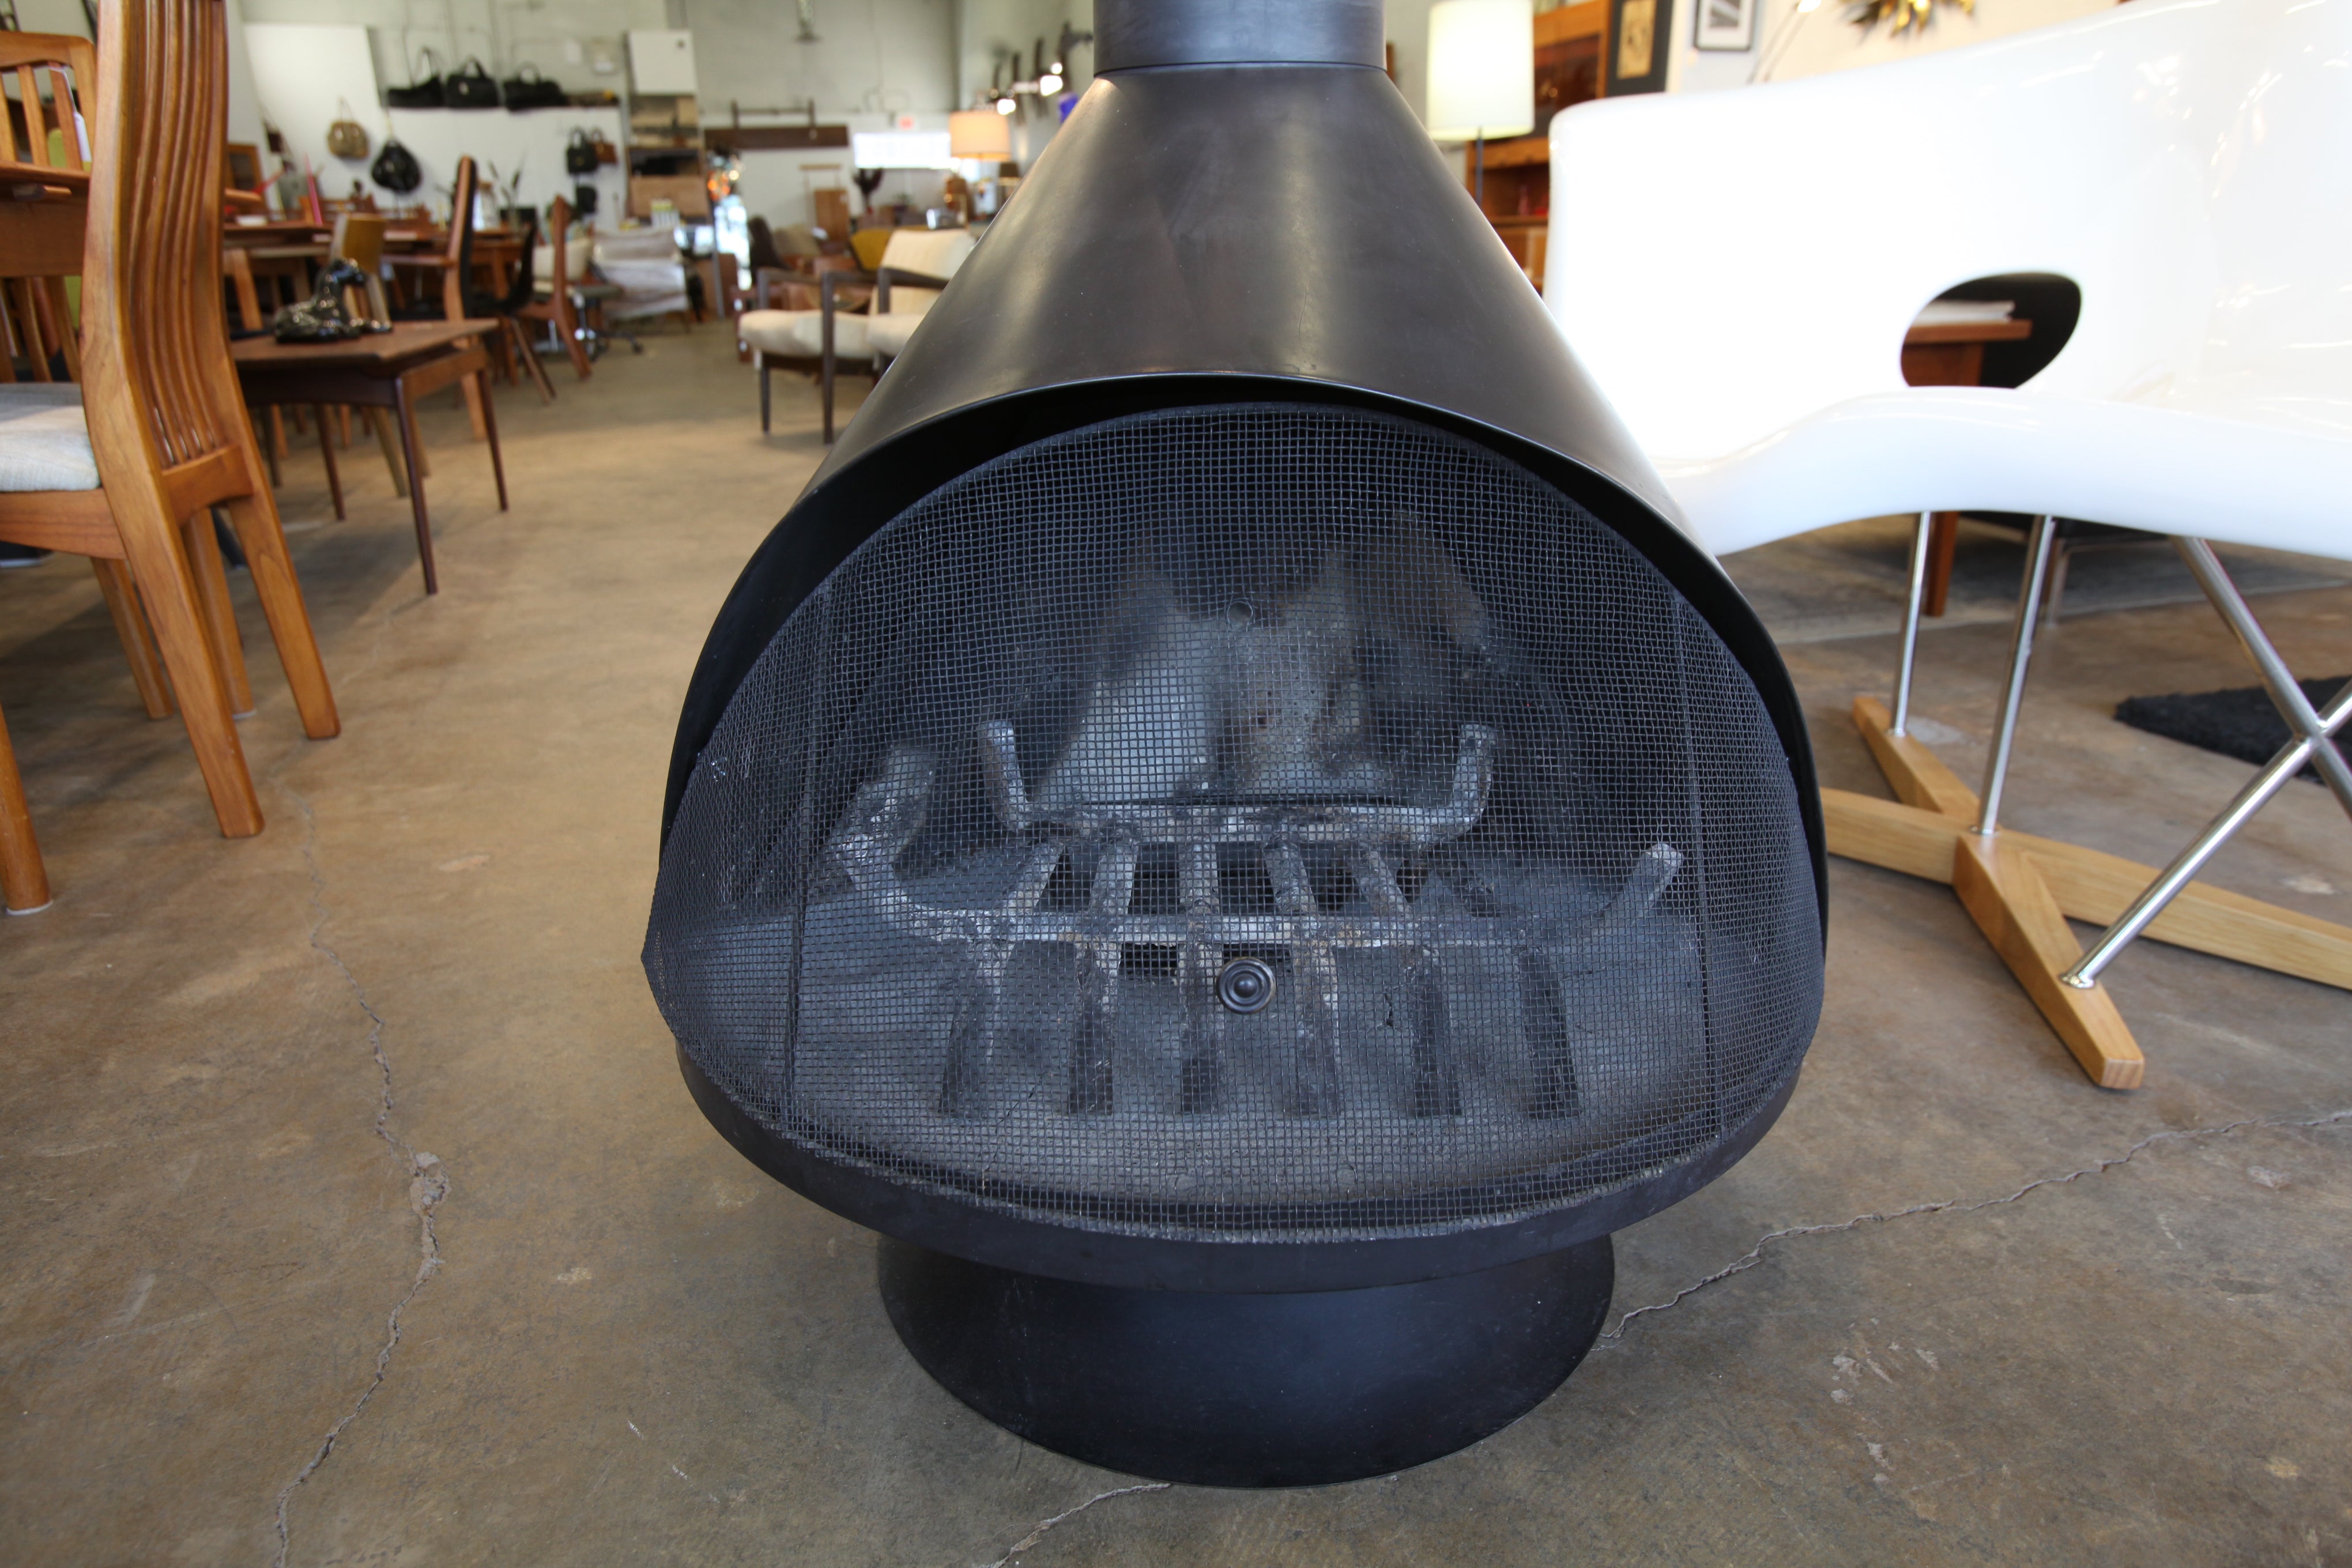 Vintage Smaller Size Black Acorn Fireplace (33"W x 32"D x 22"H)